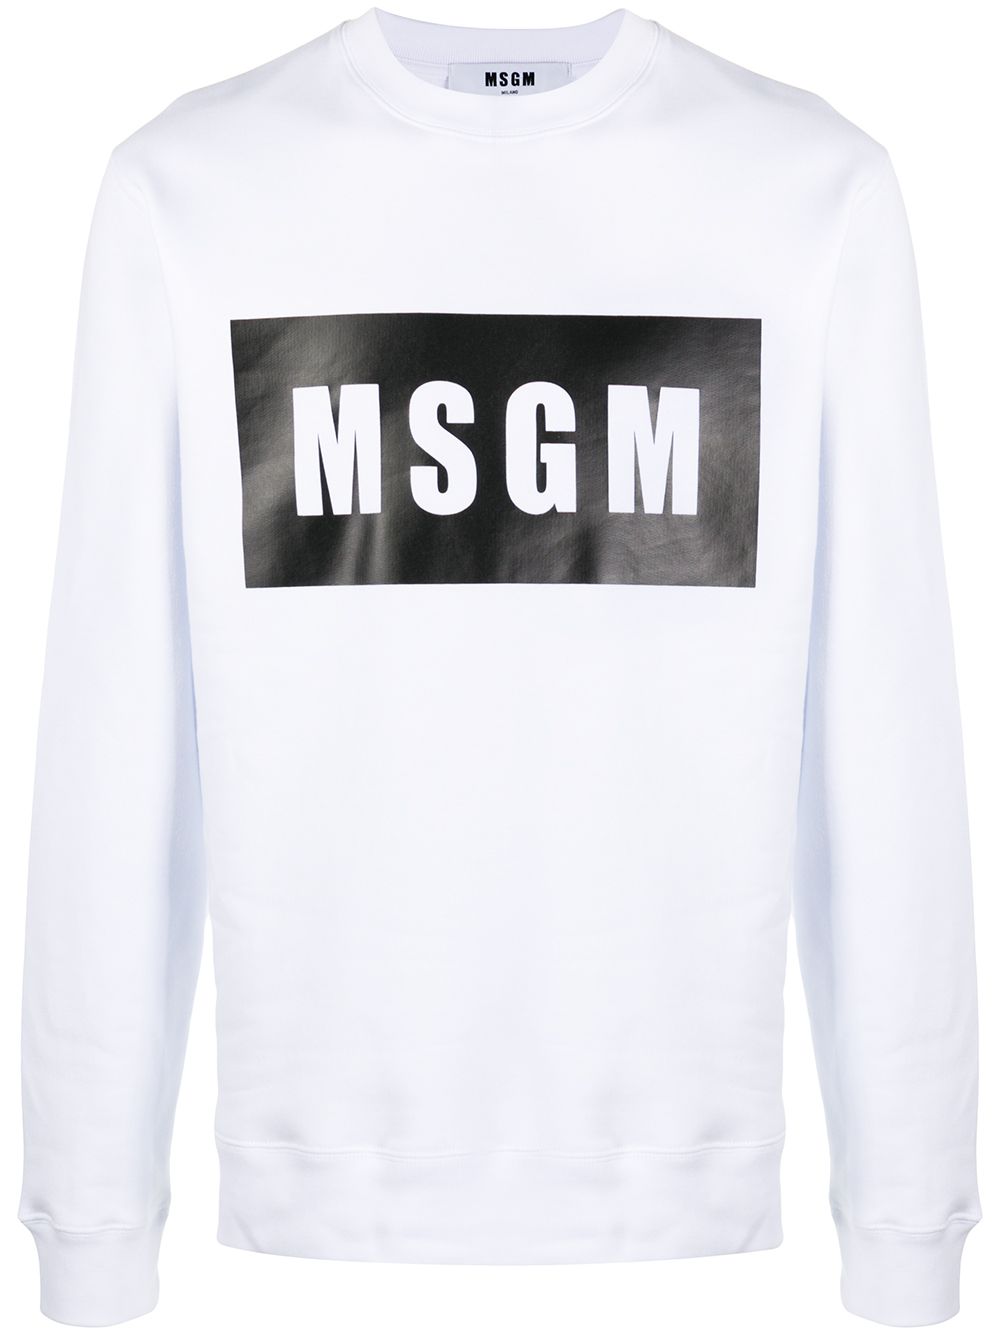 MSGM - logo print sweatshirt - men - Cotton - XS - White